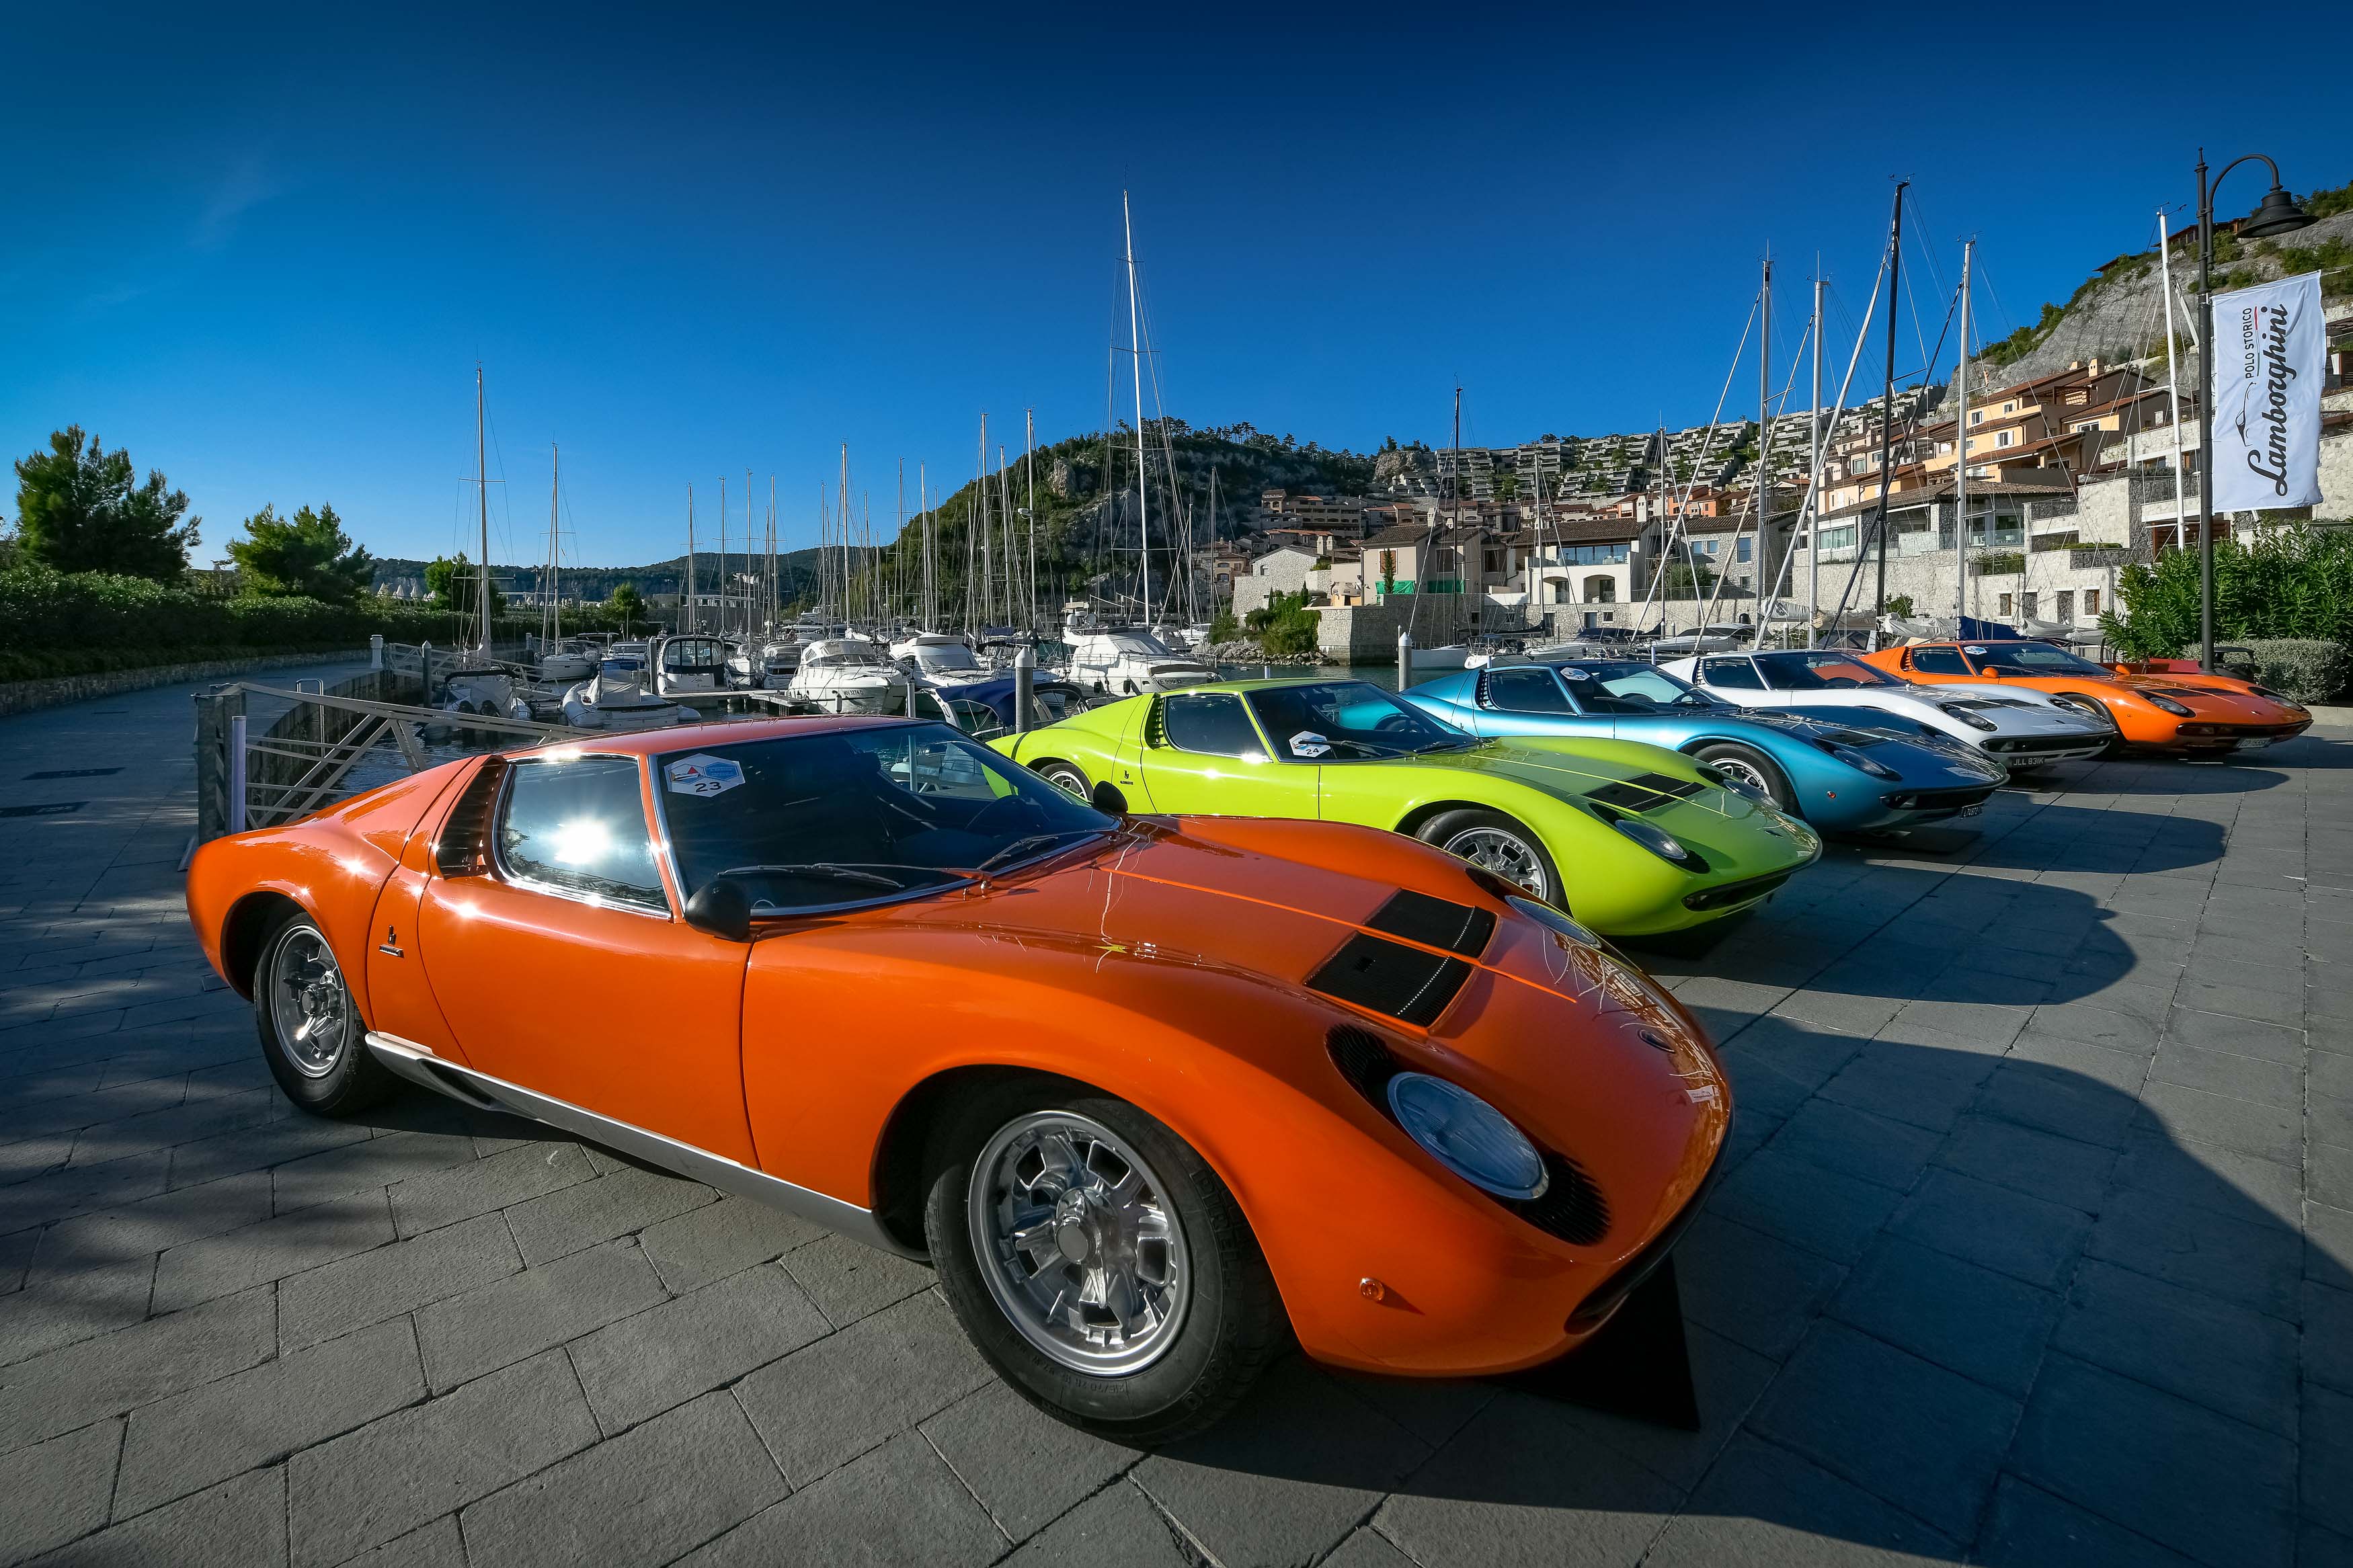 Il Museo Nicolis nella prestigiosa giuria internazionale  “Lamborghini & Design” Concorso d’Eleganza